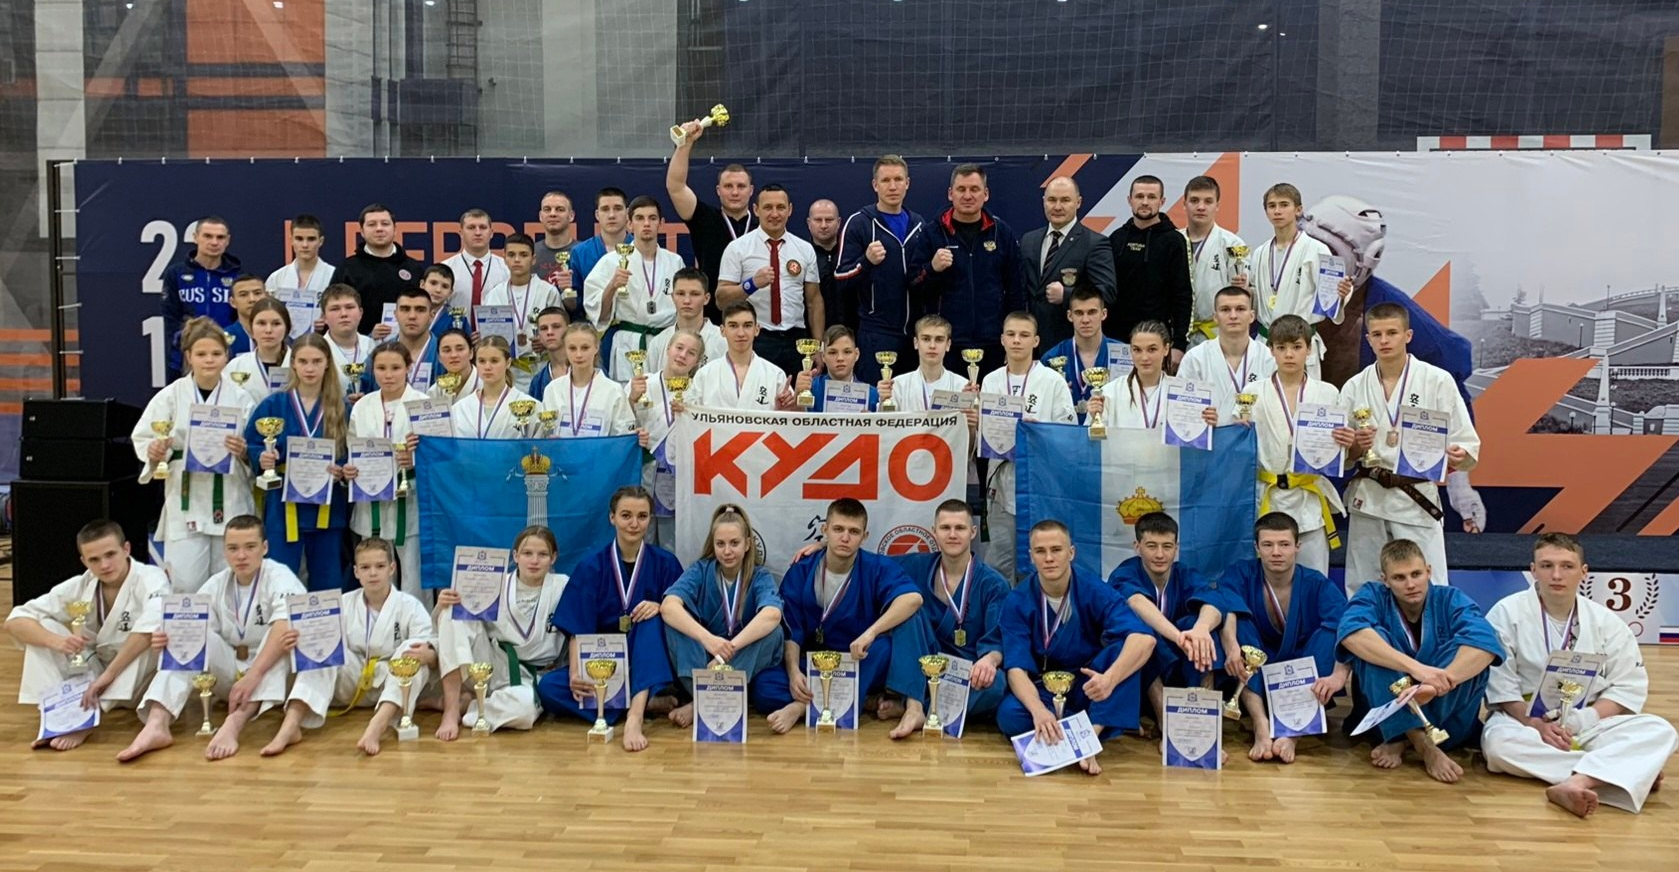 Ульяновские кудоисты привезли 17 золотых медалей из Нижнего Новгорода